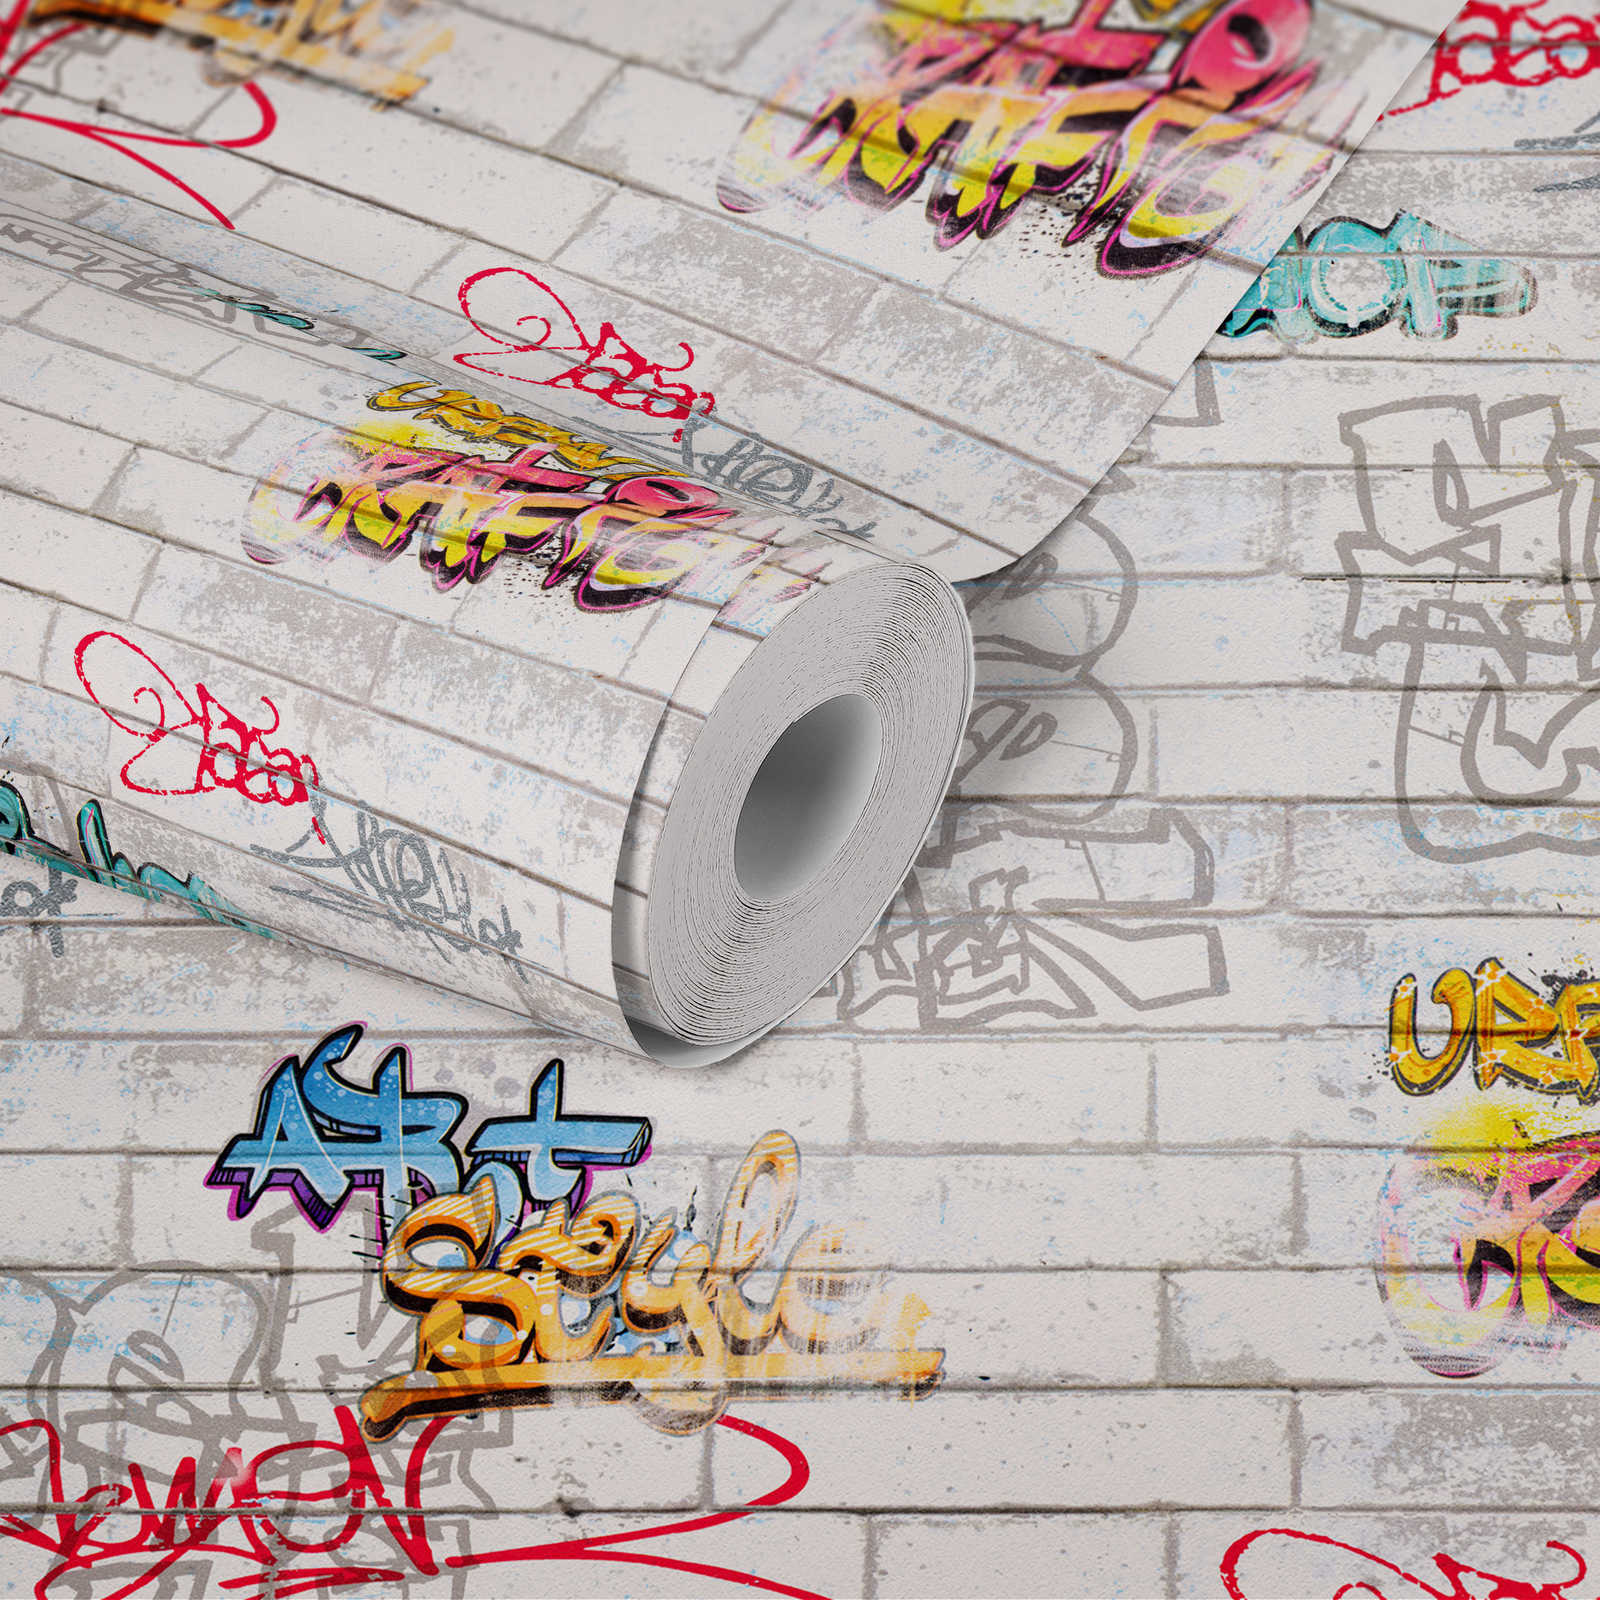             Carta da parati Graffiti con ottica murale per la camera dei ragazzi - Colorata, bianca
        